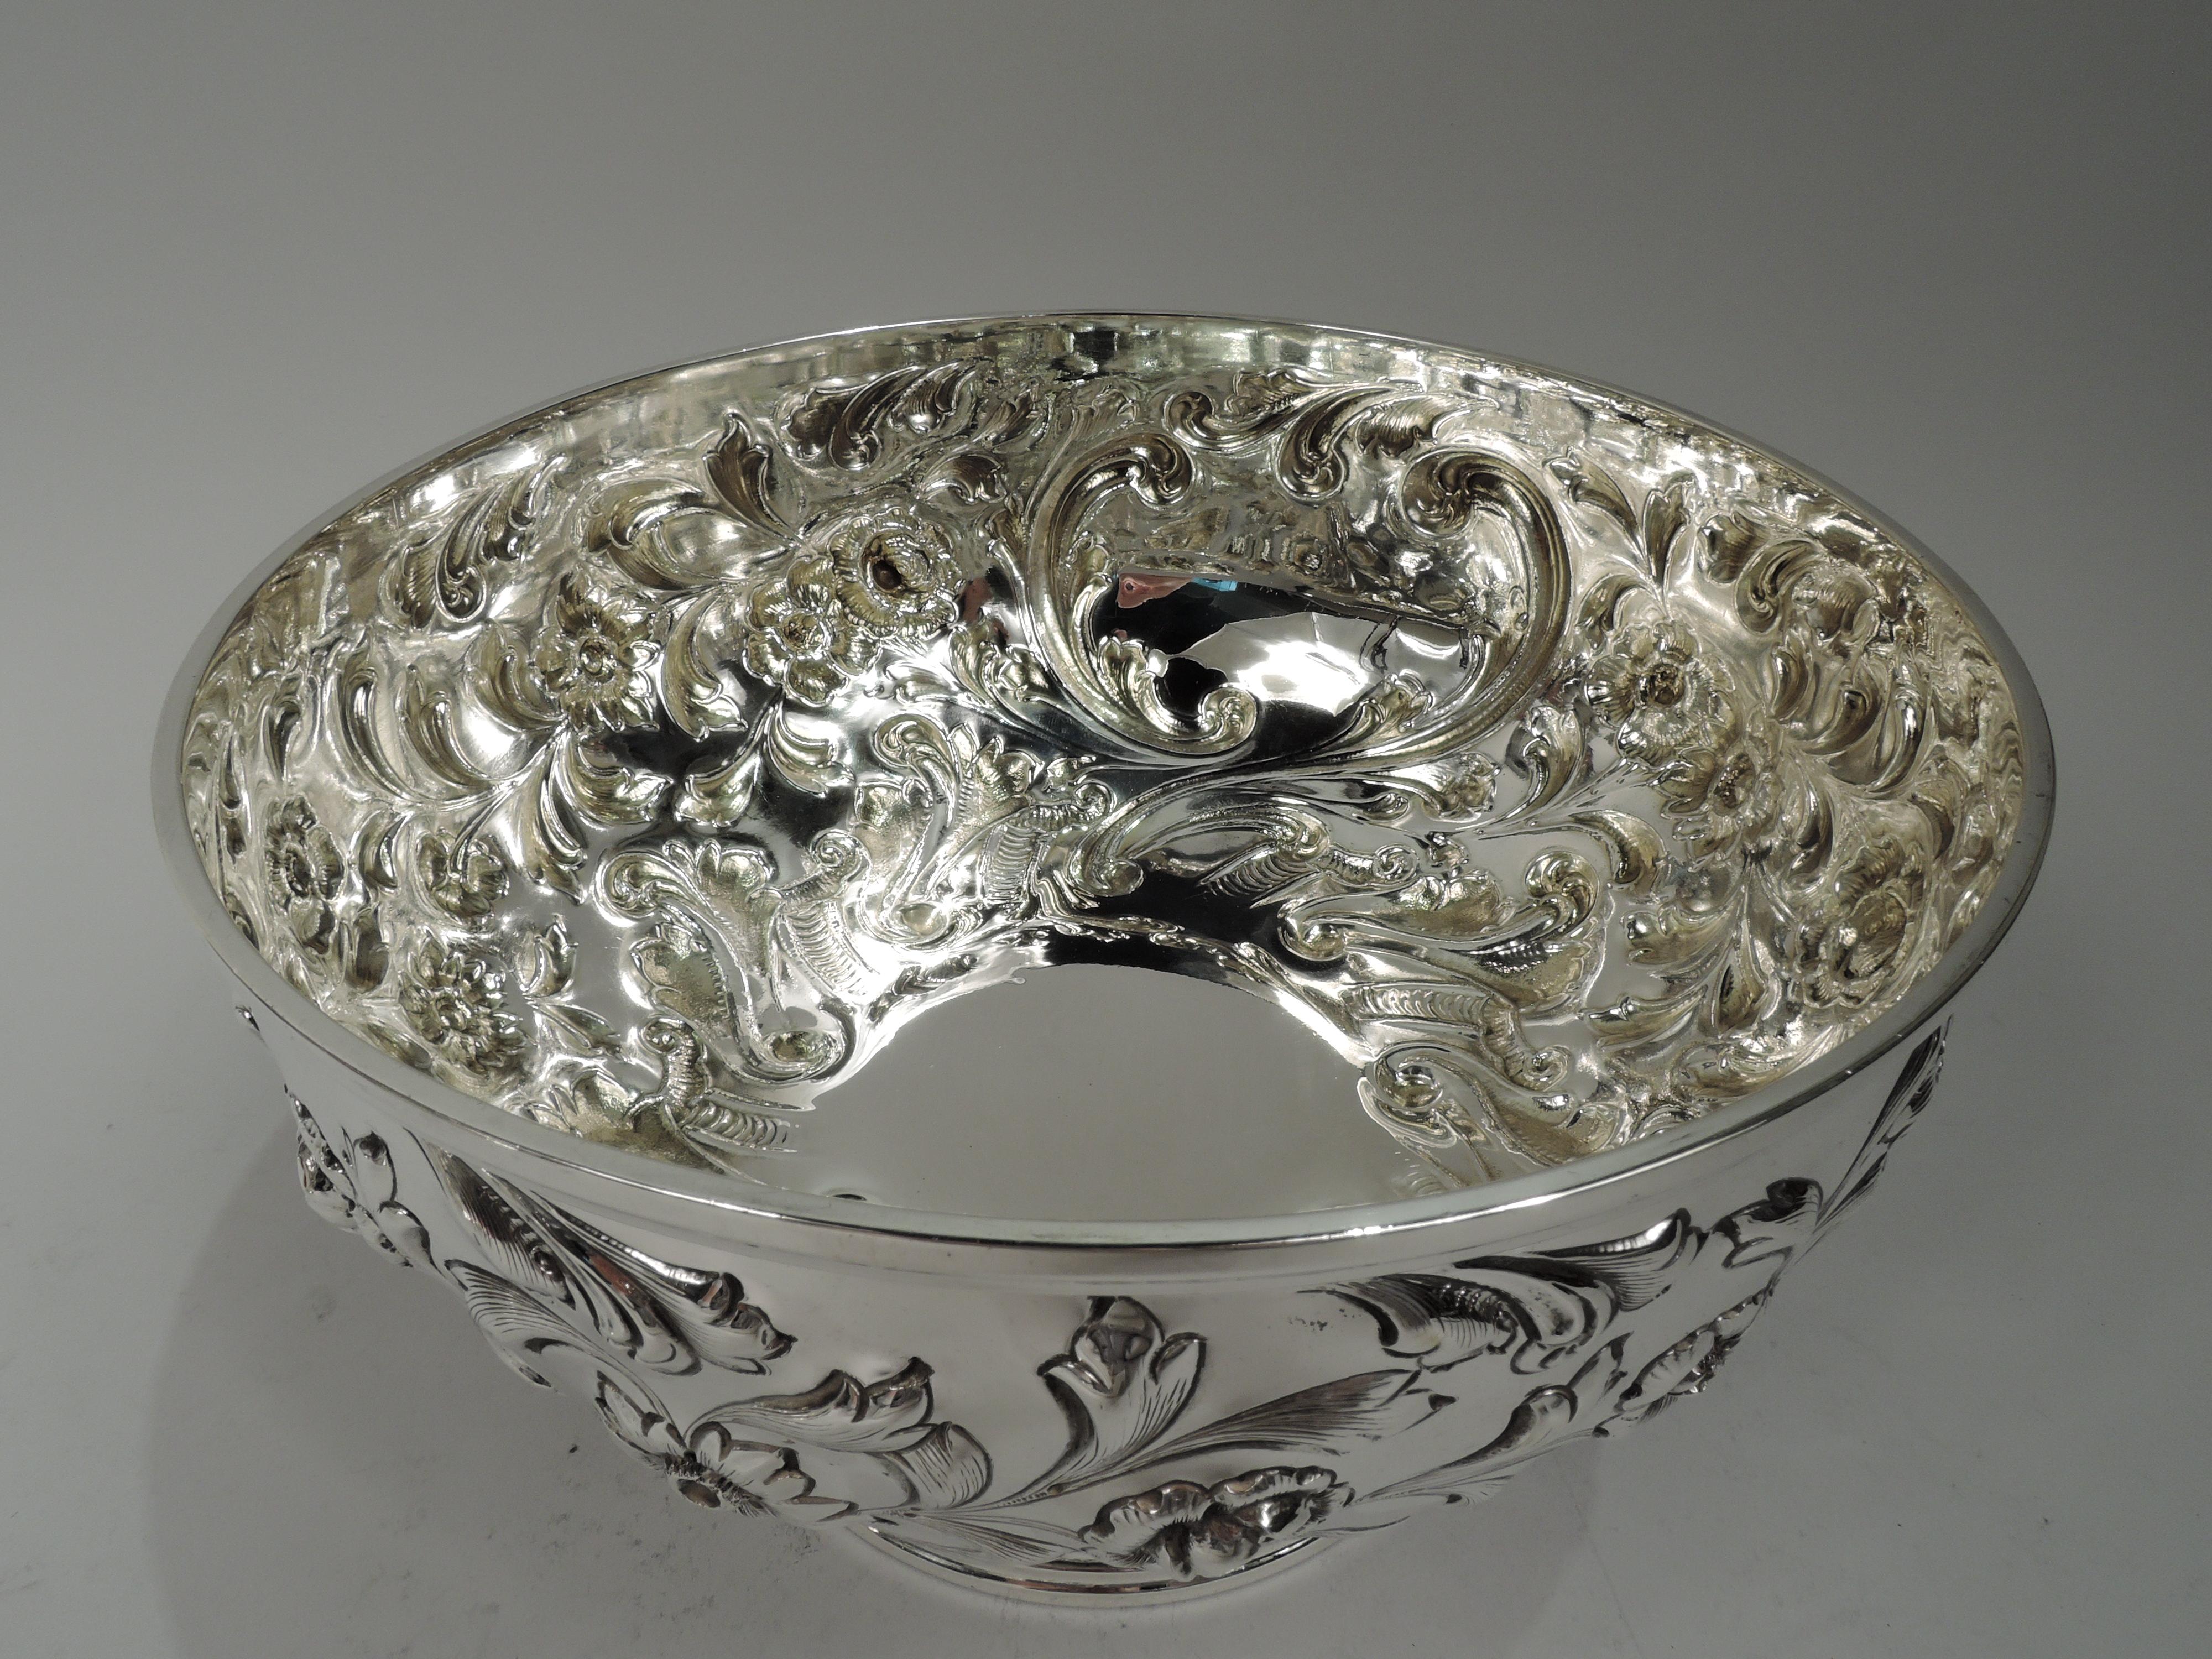 Repoussé Pretty Antique American Sterling Silver Repousse Centerpiece Bowl